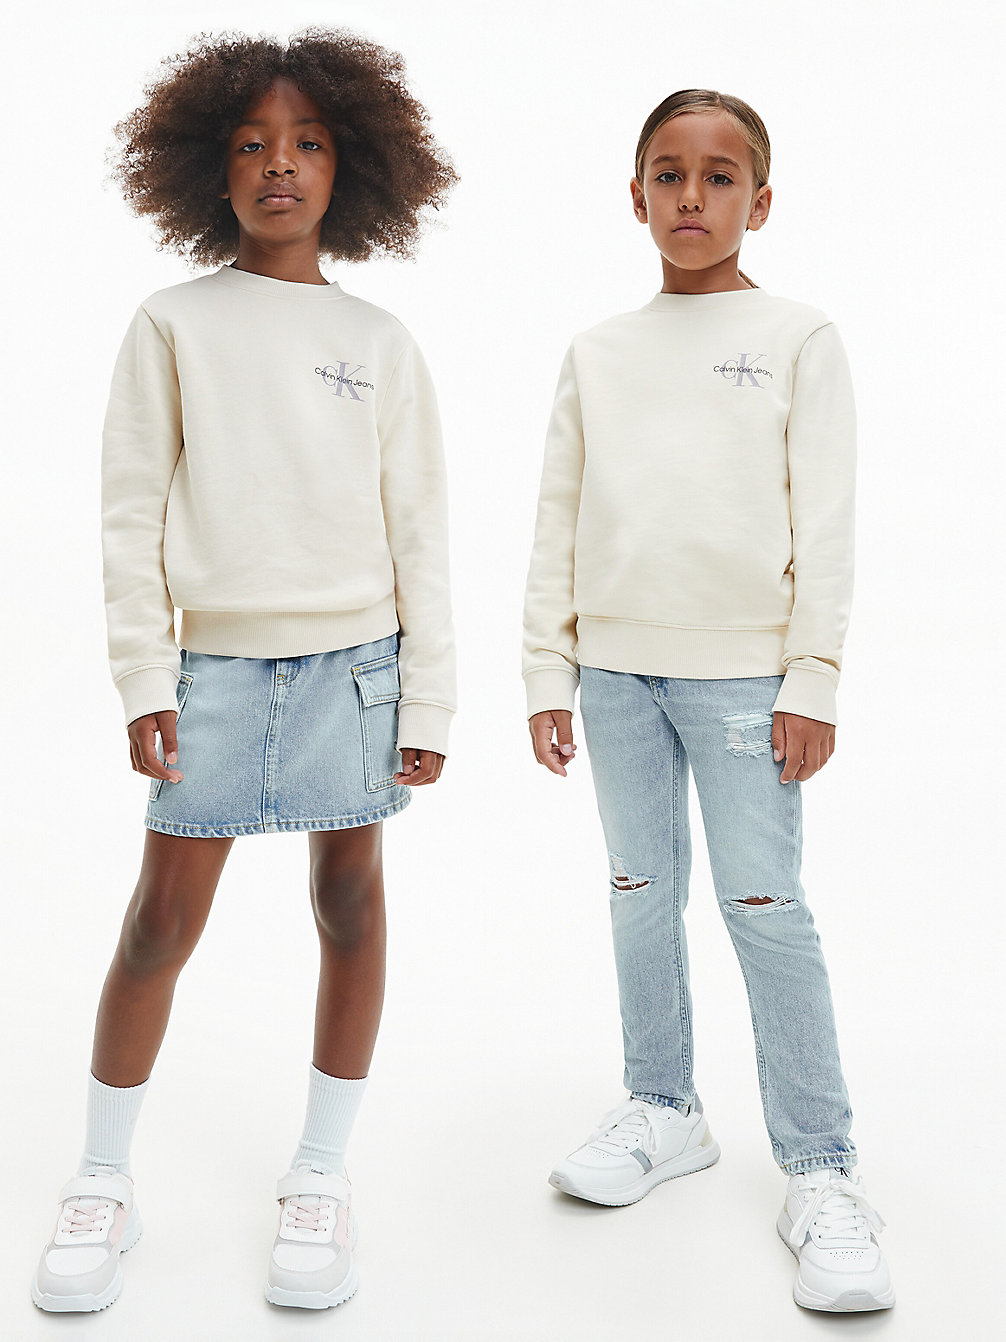 MUSLIN > Bluza Unisex > undefined kids unisex - Calvin Klein